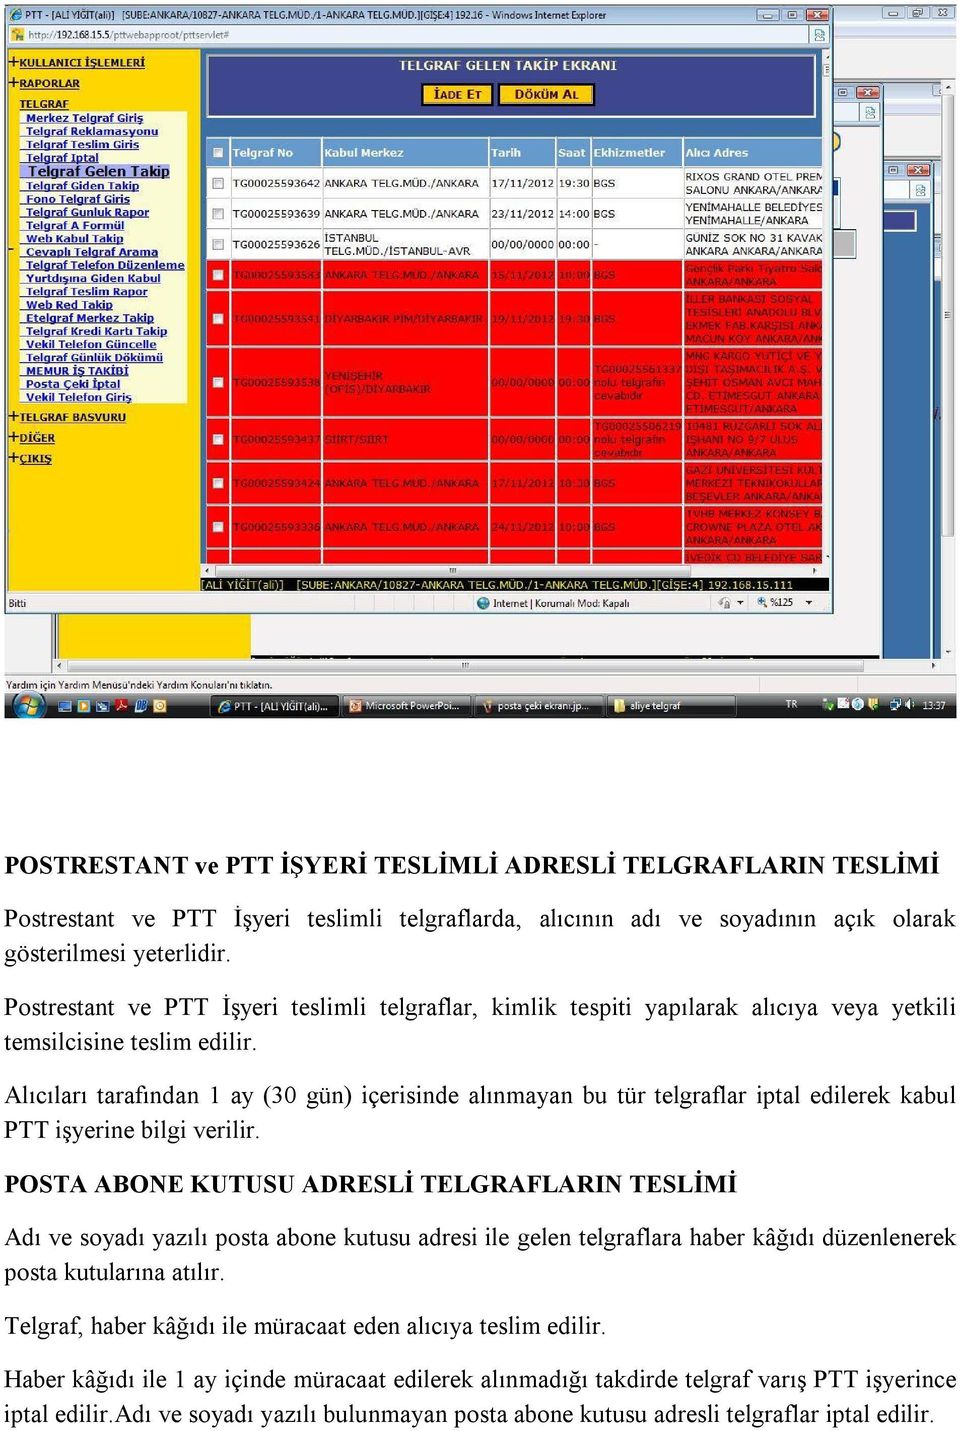 Alıcıları tarafından 1 ay (30 gün) içerisinde alınmayan bu tür telgraflar iptal edilerek kabul PTT işyerine bilgi verilir.